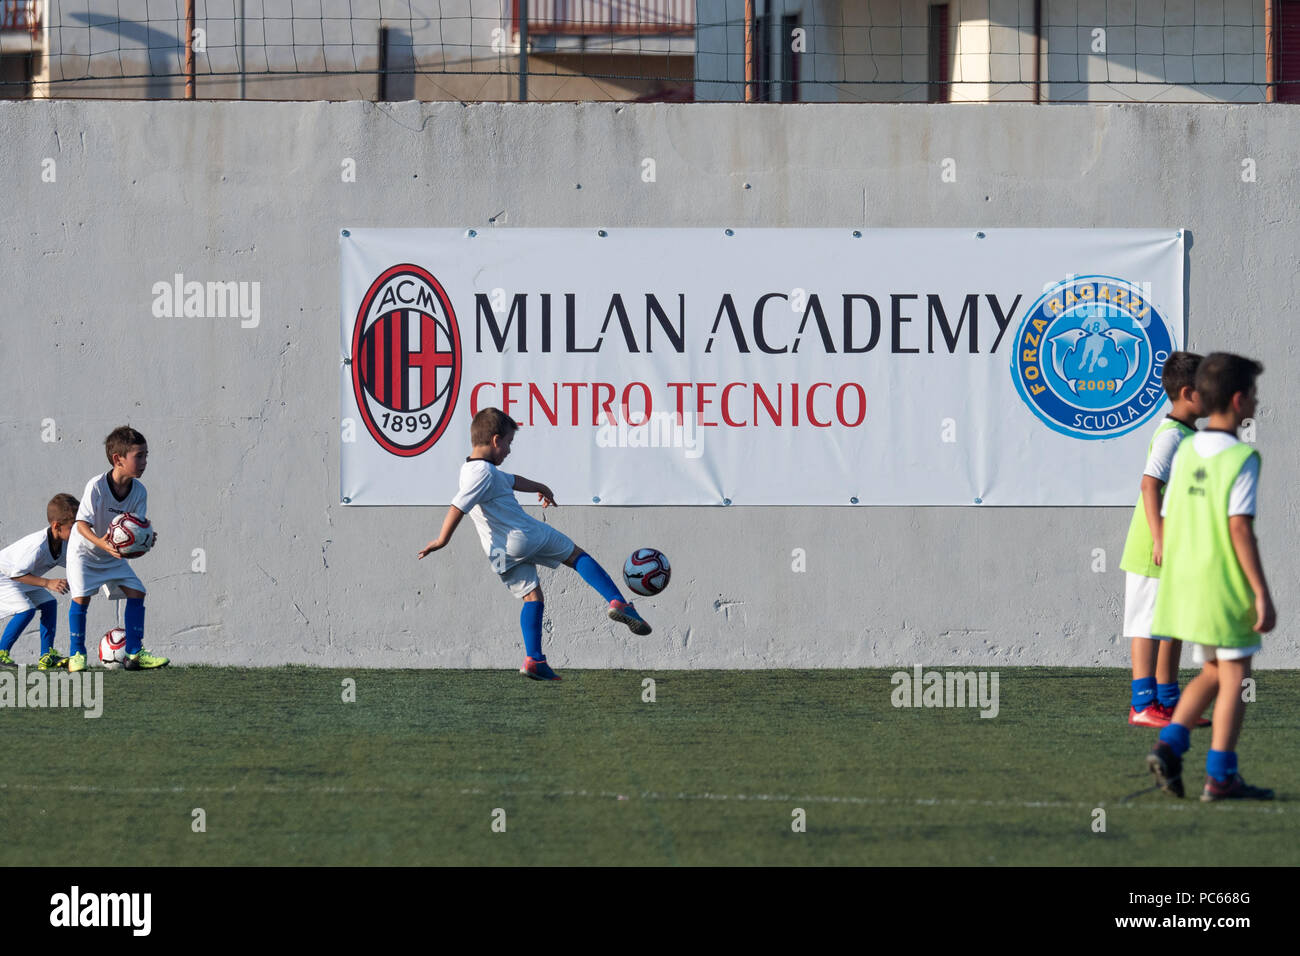 Corigliano Calabro L Inaugurazione Dell Accademia Milano Centro Tecnico Nella Citta Di Rino Gattuso World Soccer